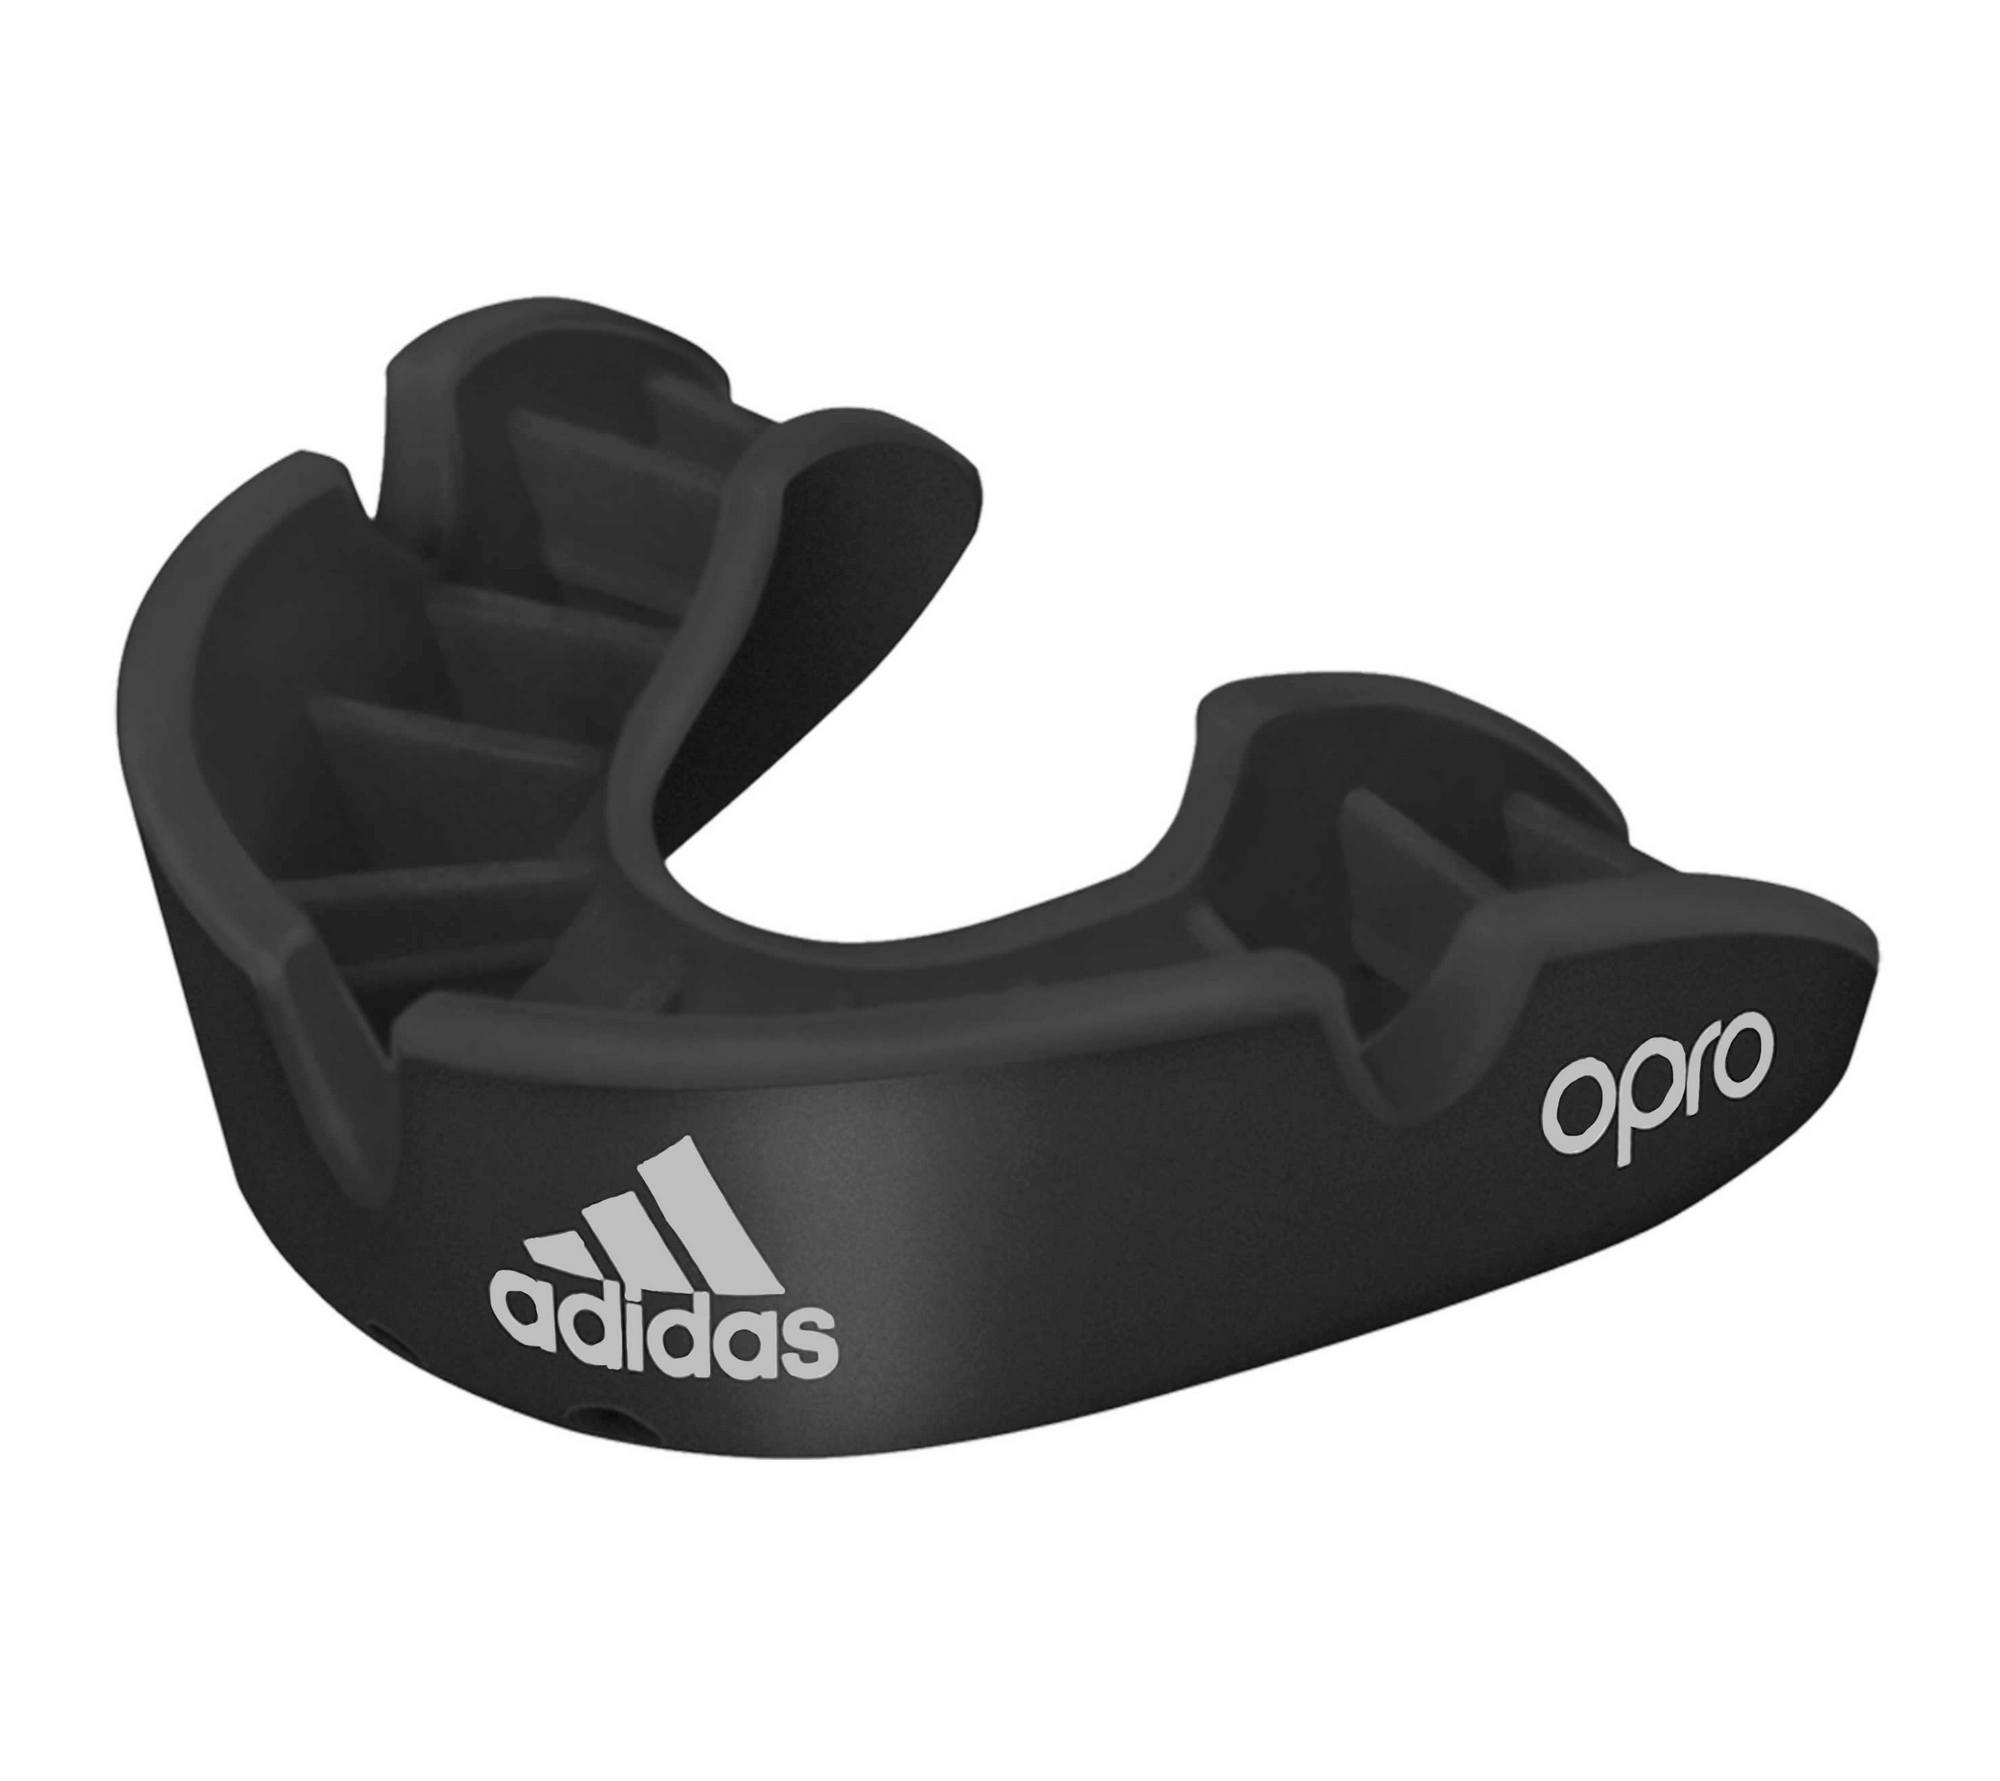 Купить Капа одночелюстная Adidas adiBP31 Opro Bronze Gen4 Self-Fit Mouthguard черная,